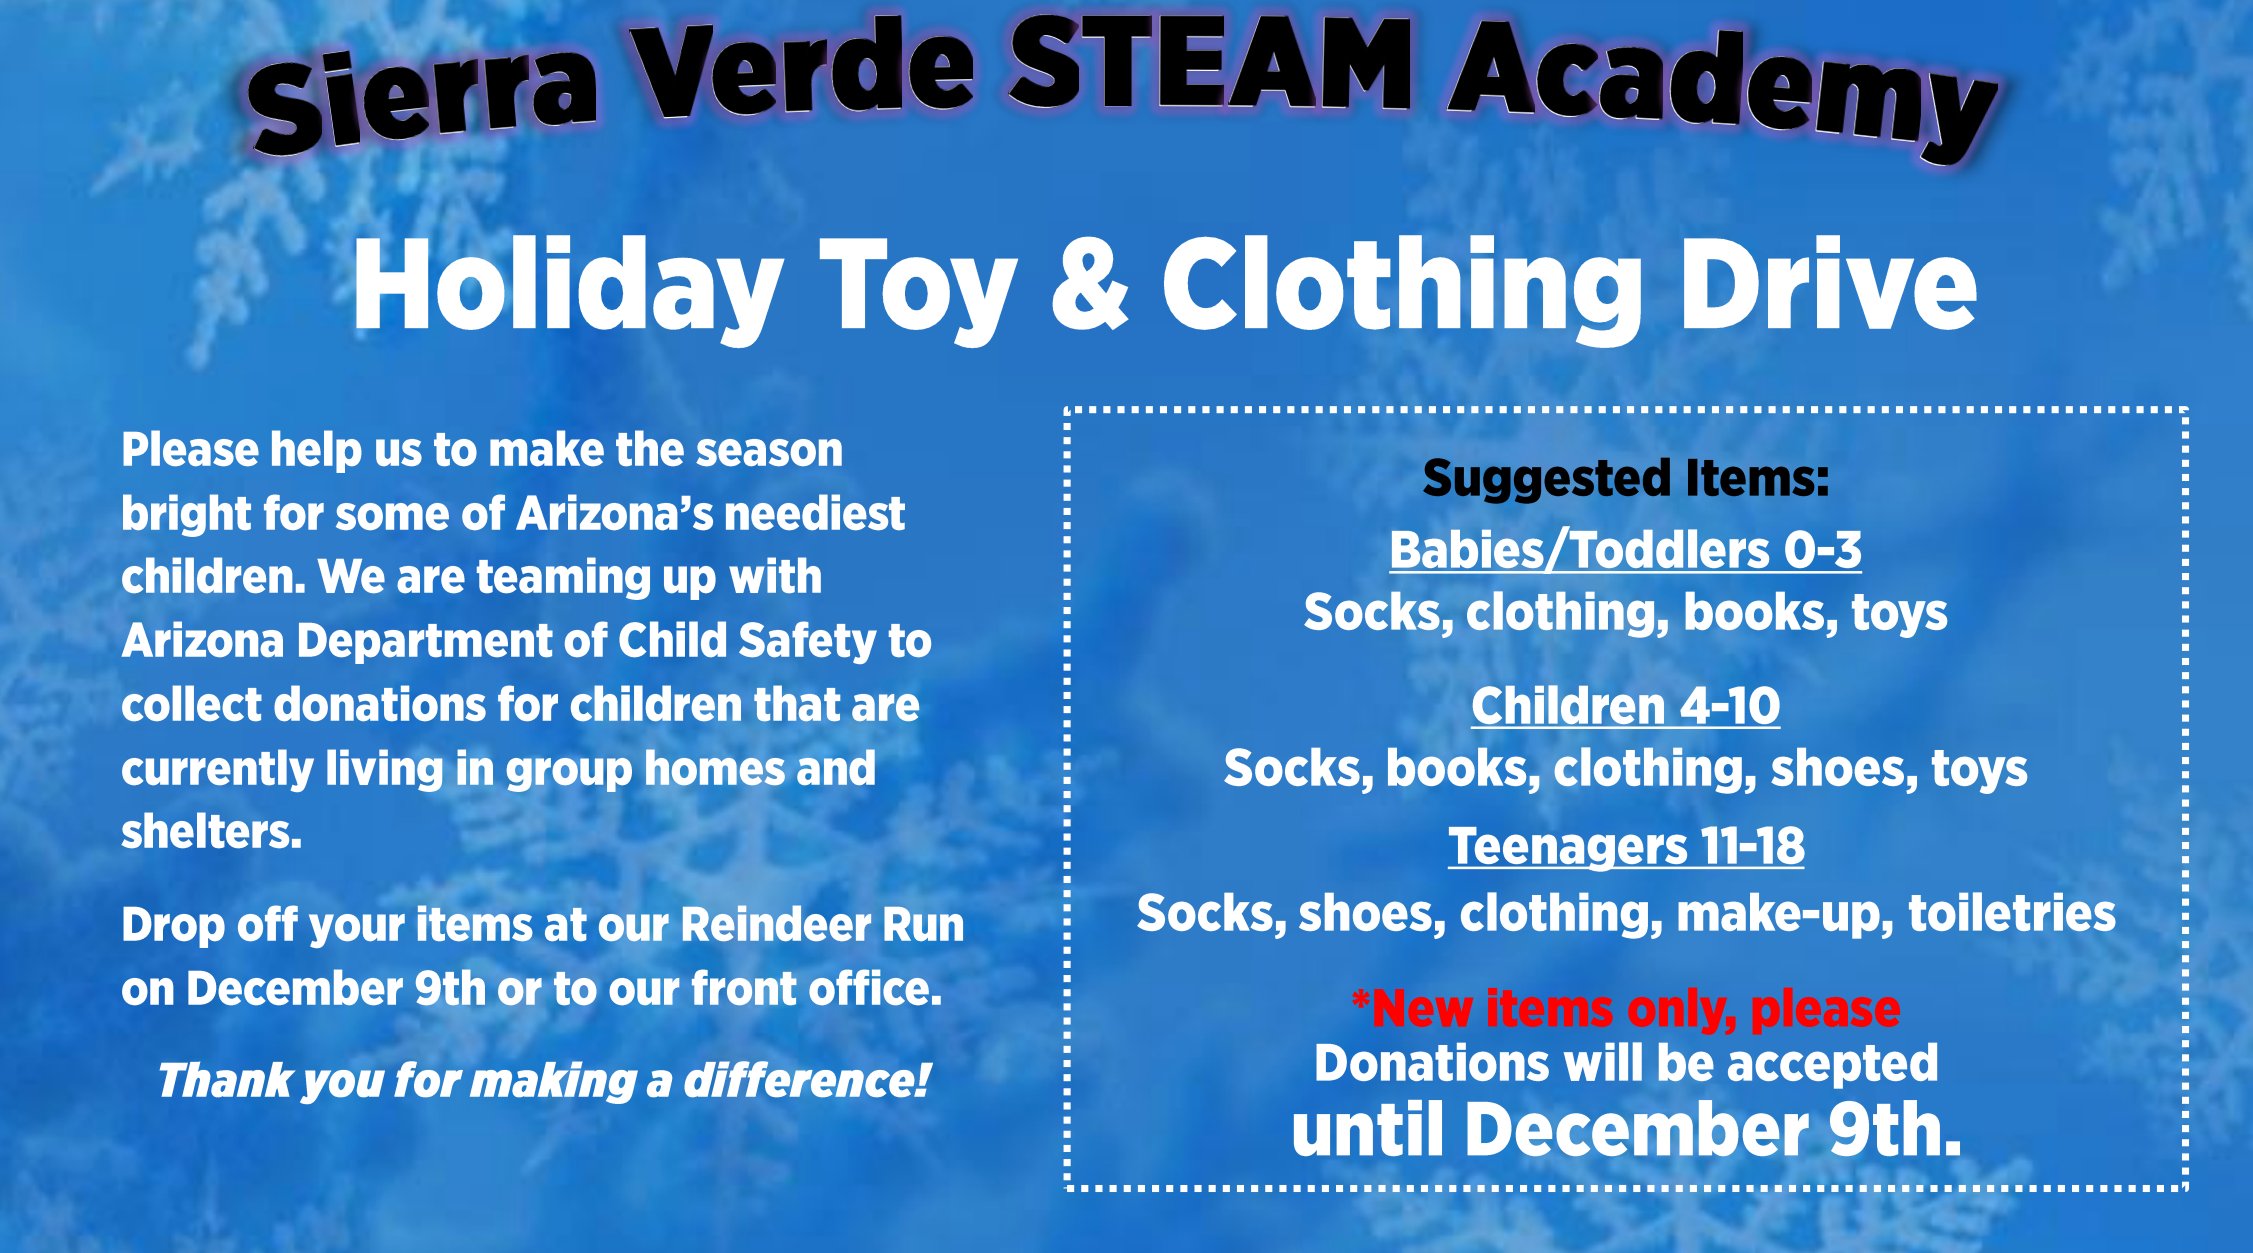 Sierra Verde STEAM Academy / Homepage